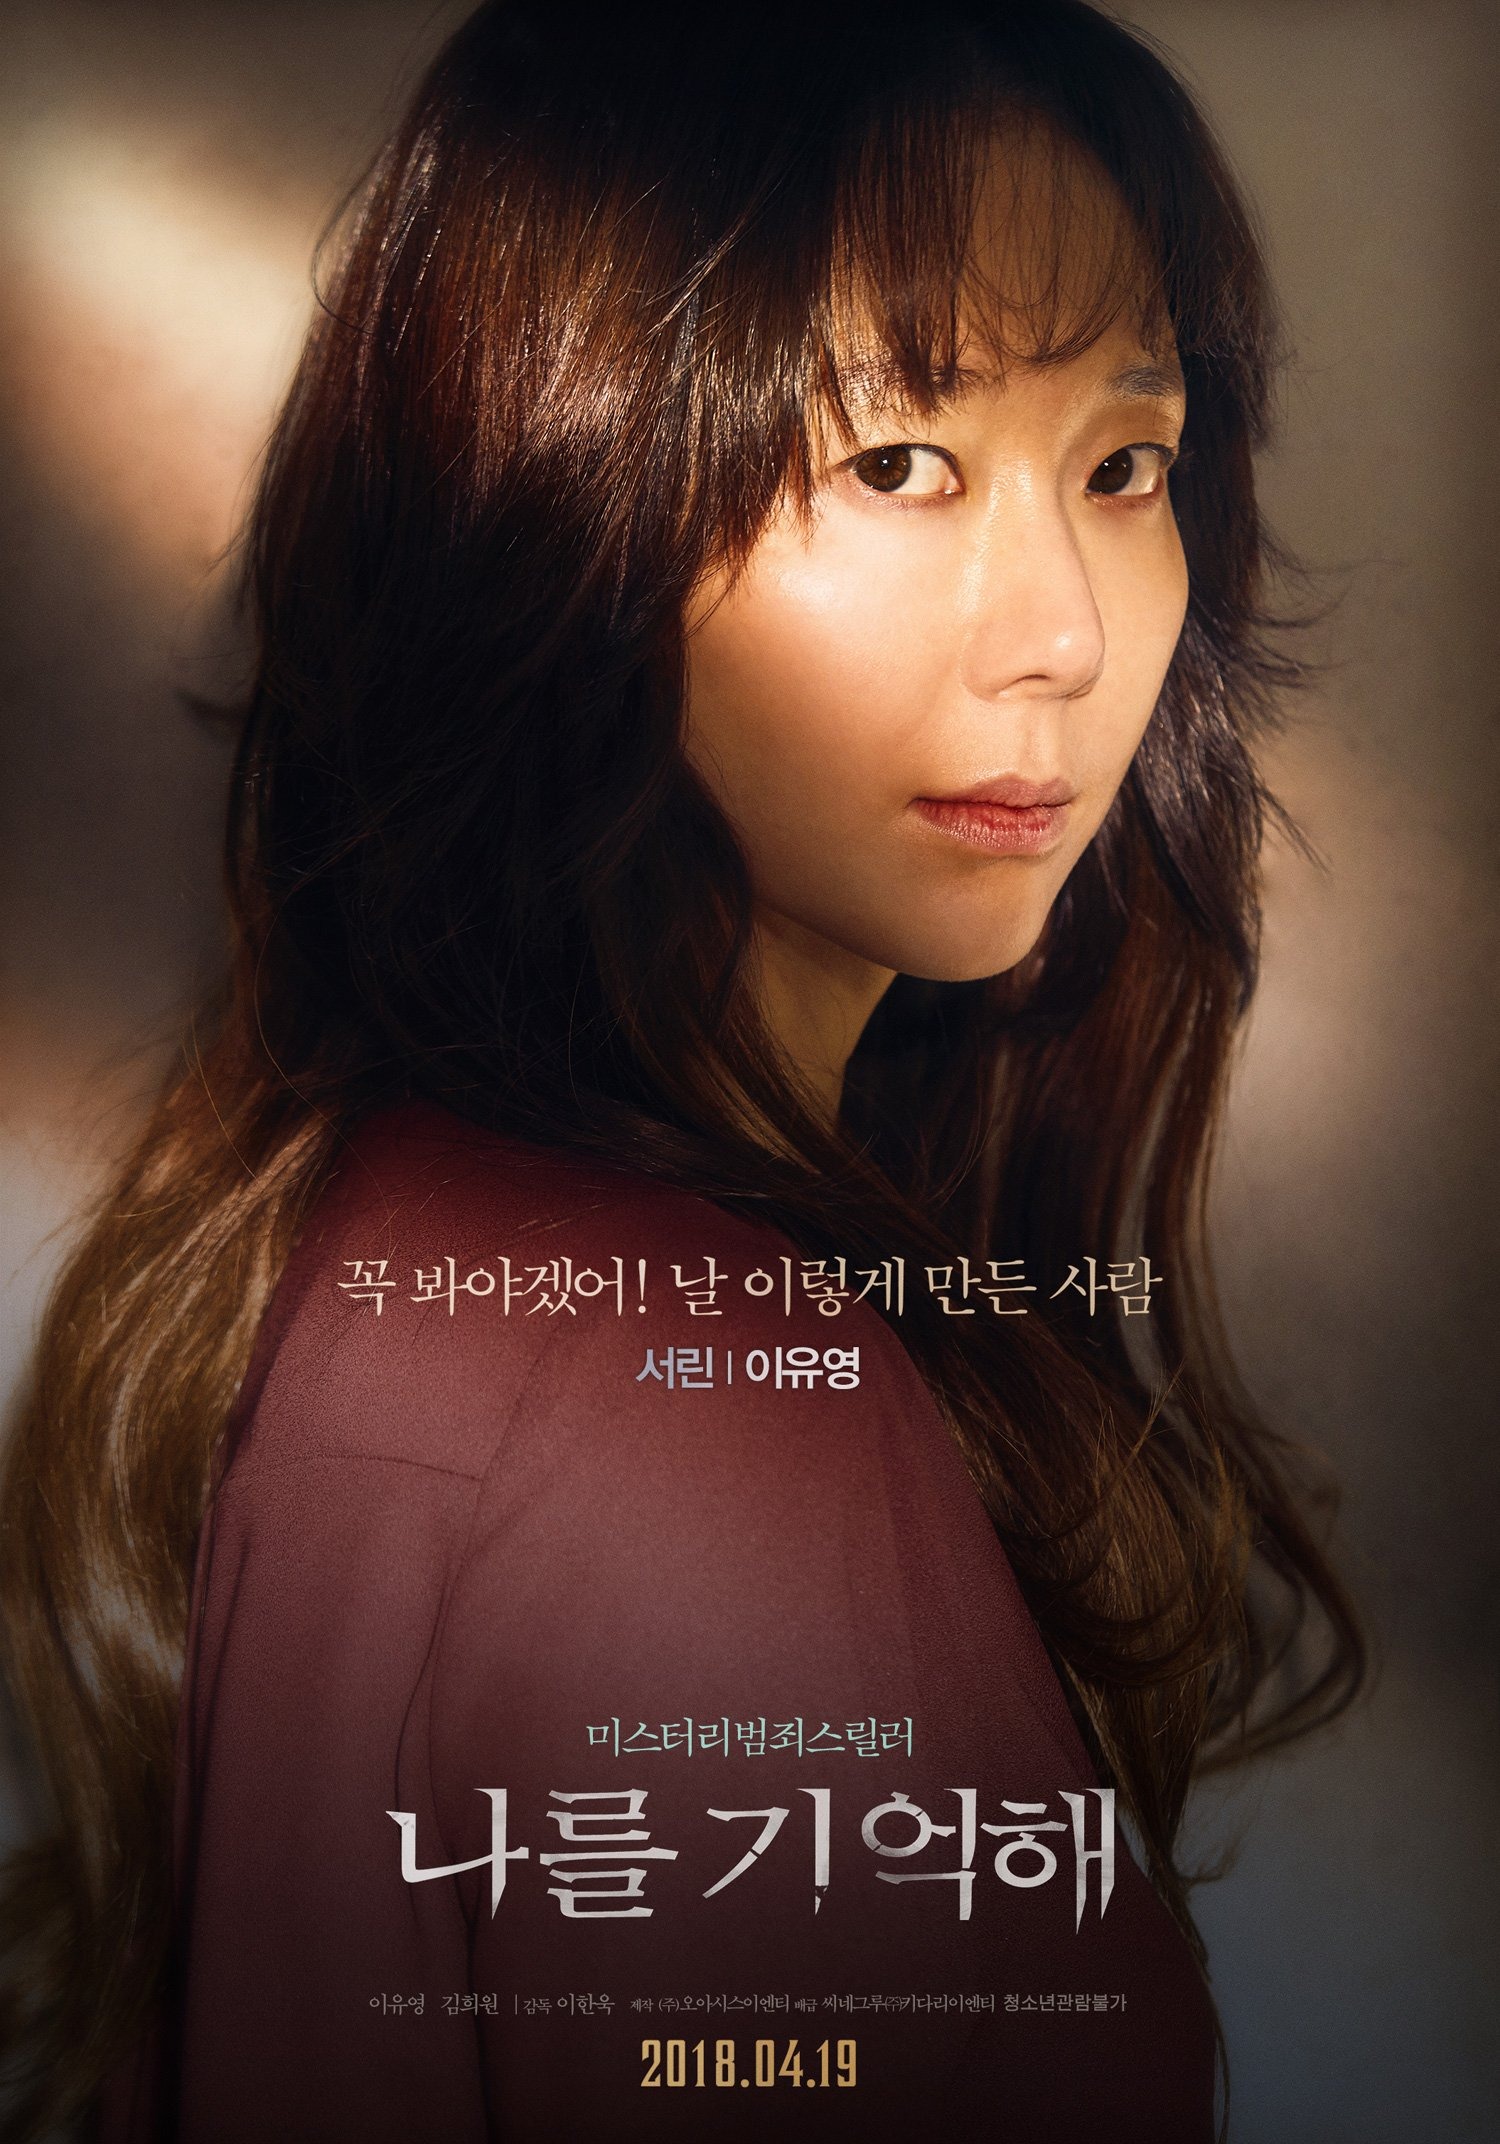 Phim Hay nho ten toi hinh anh 15 - Hãy nhớ tên tôi: Vén màn những góc khuất tối tăm của xã hội Hàn Quốc